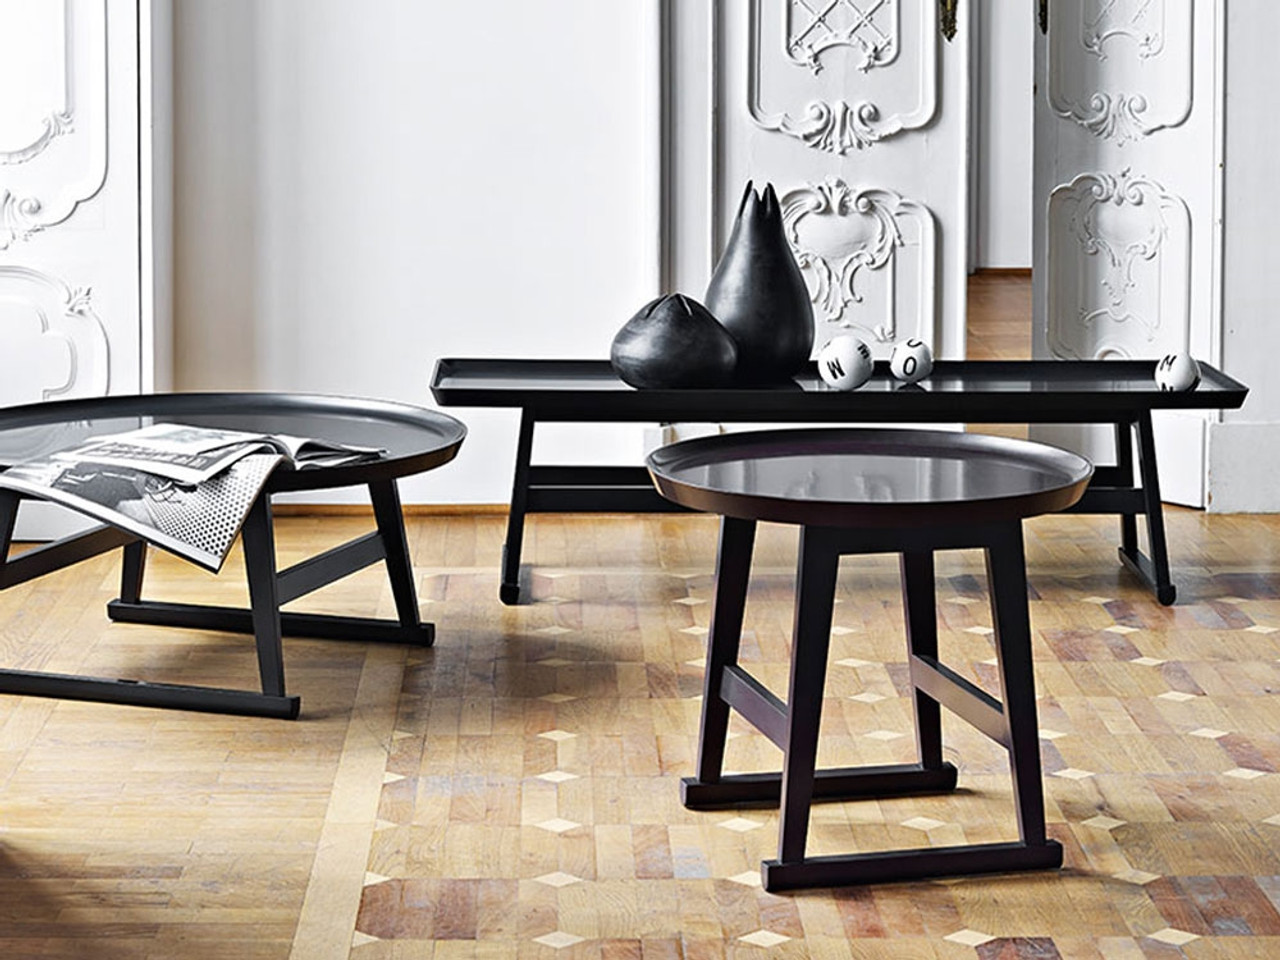 Maxalto Recipio '14 Side Table by Antonio Citterio 